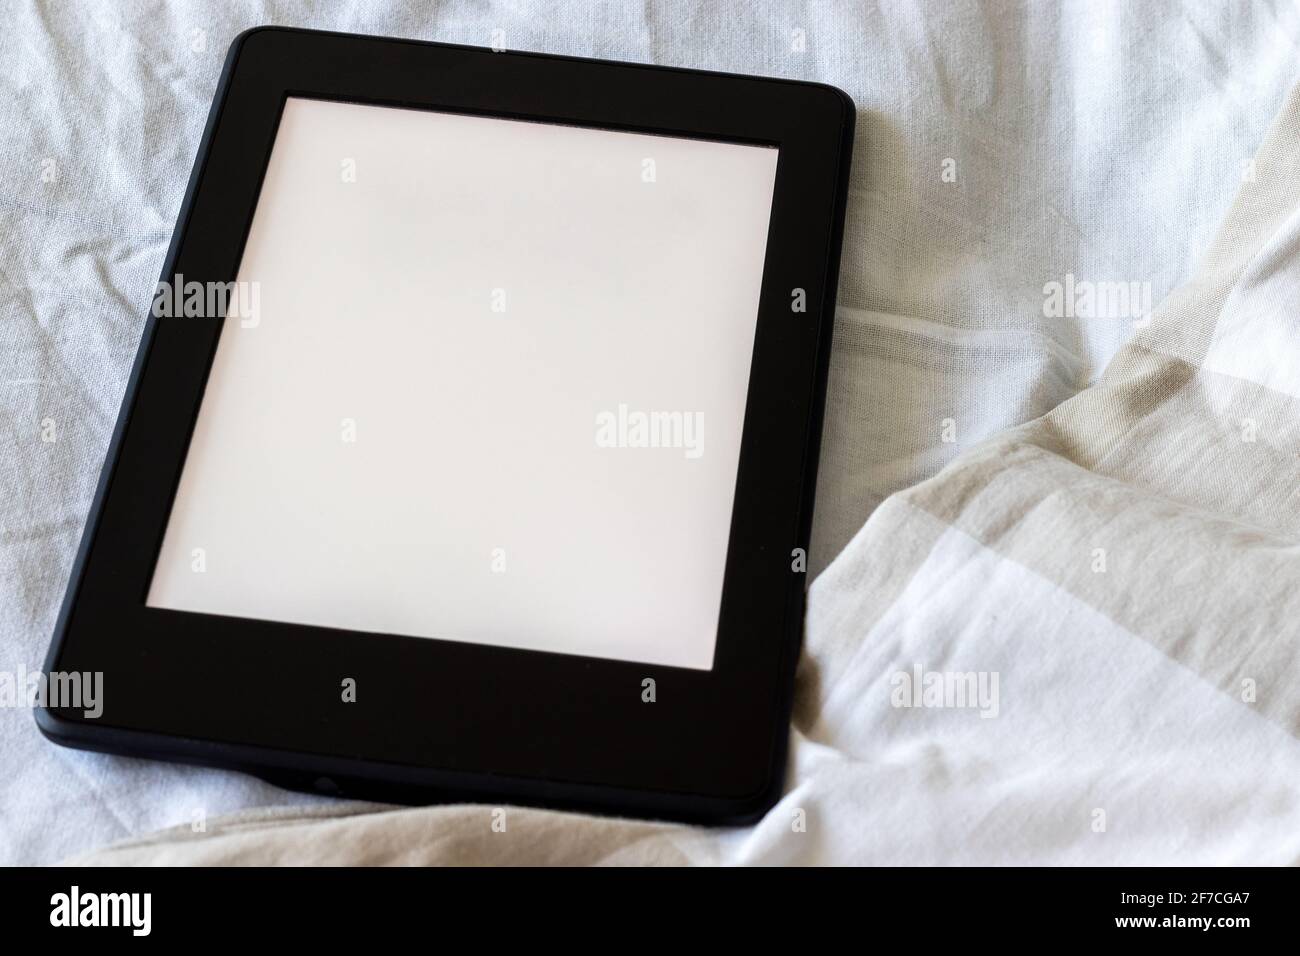 Ein modernes schwarzes elektronisches Buch mit einem leeren Bildschirm auf einem weißen und beigen Bett in Nahaufnahme. Mockup Tablet auf der Bettwäsche Stockfoto